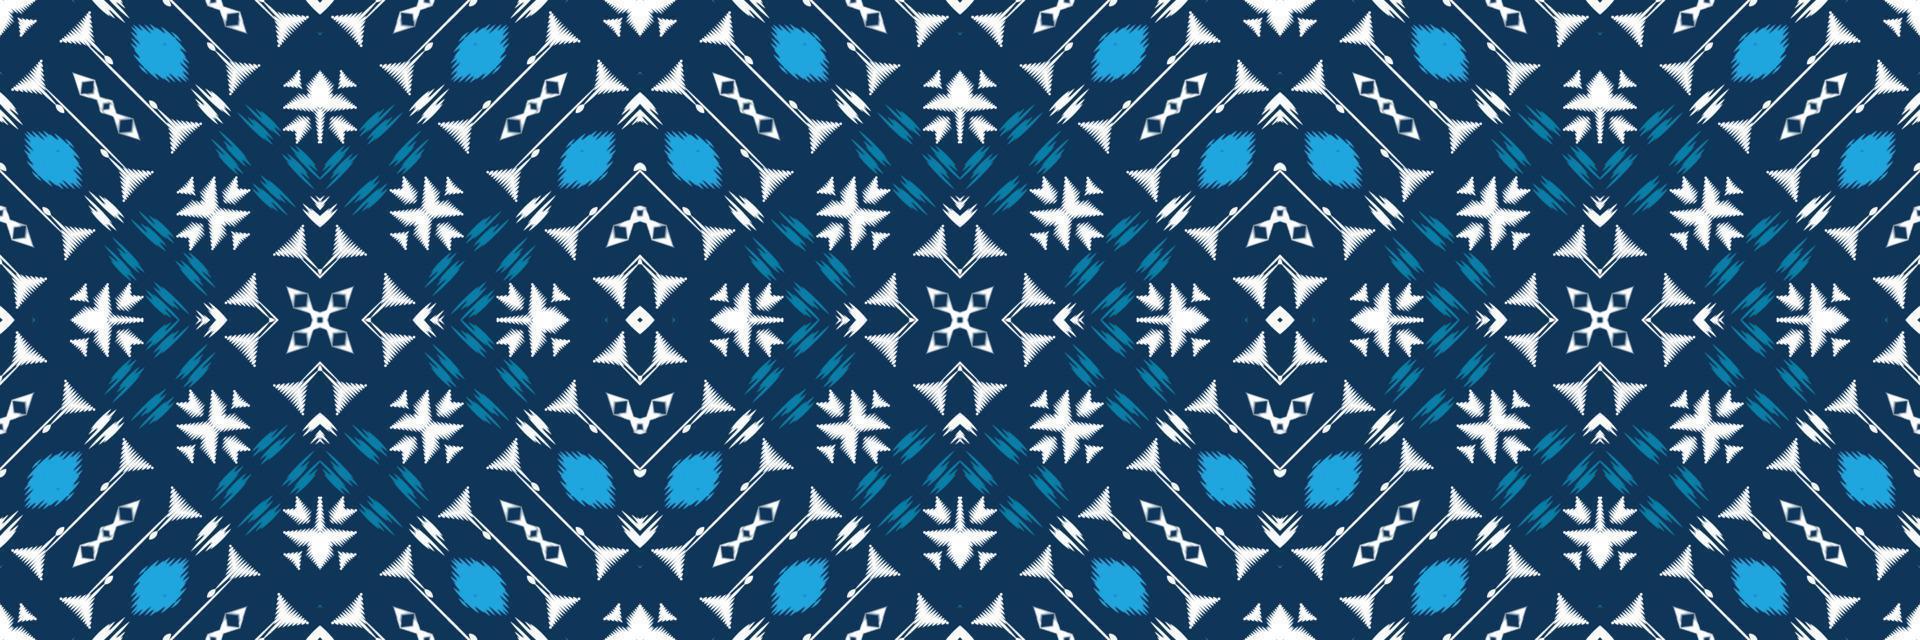 batik têxtil ikkat ou ikat chevron sem costura padrão design de vetor digital para impressão saree kurti borneo tecido borda escova símbolos amostras algodão